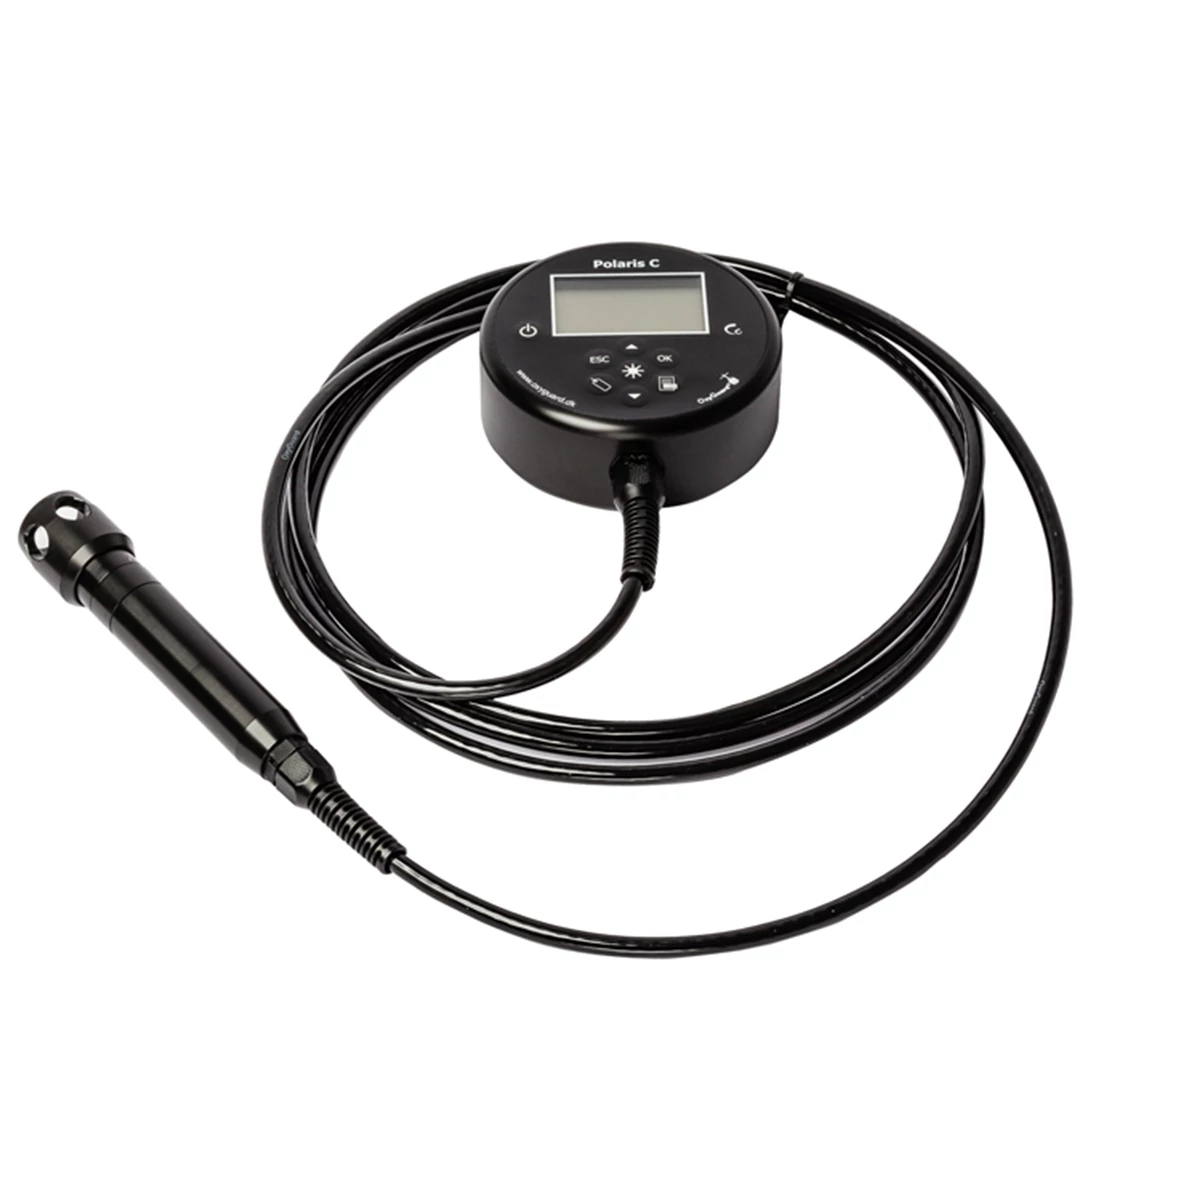 Handheld zuurstof- en temperatuurmeter met NFC-tags en Bluetooth-technologie